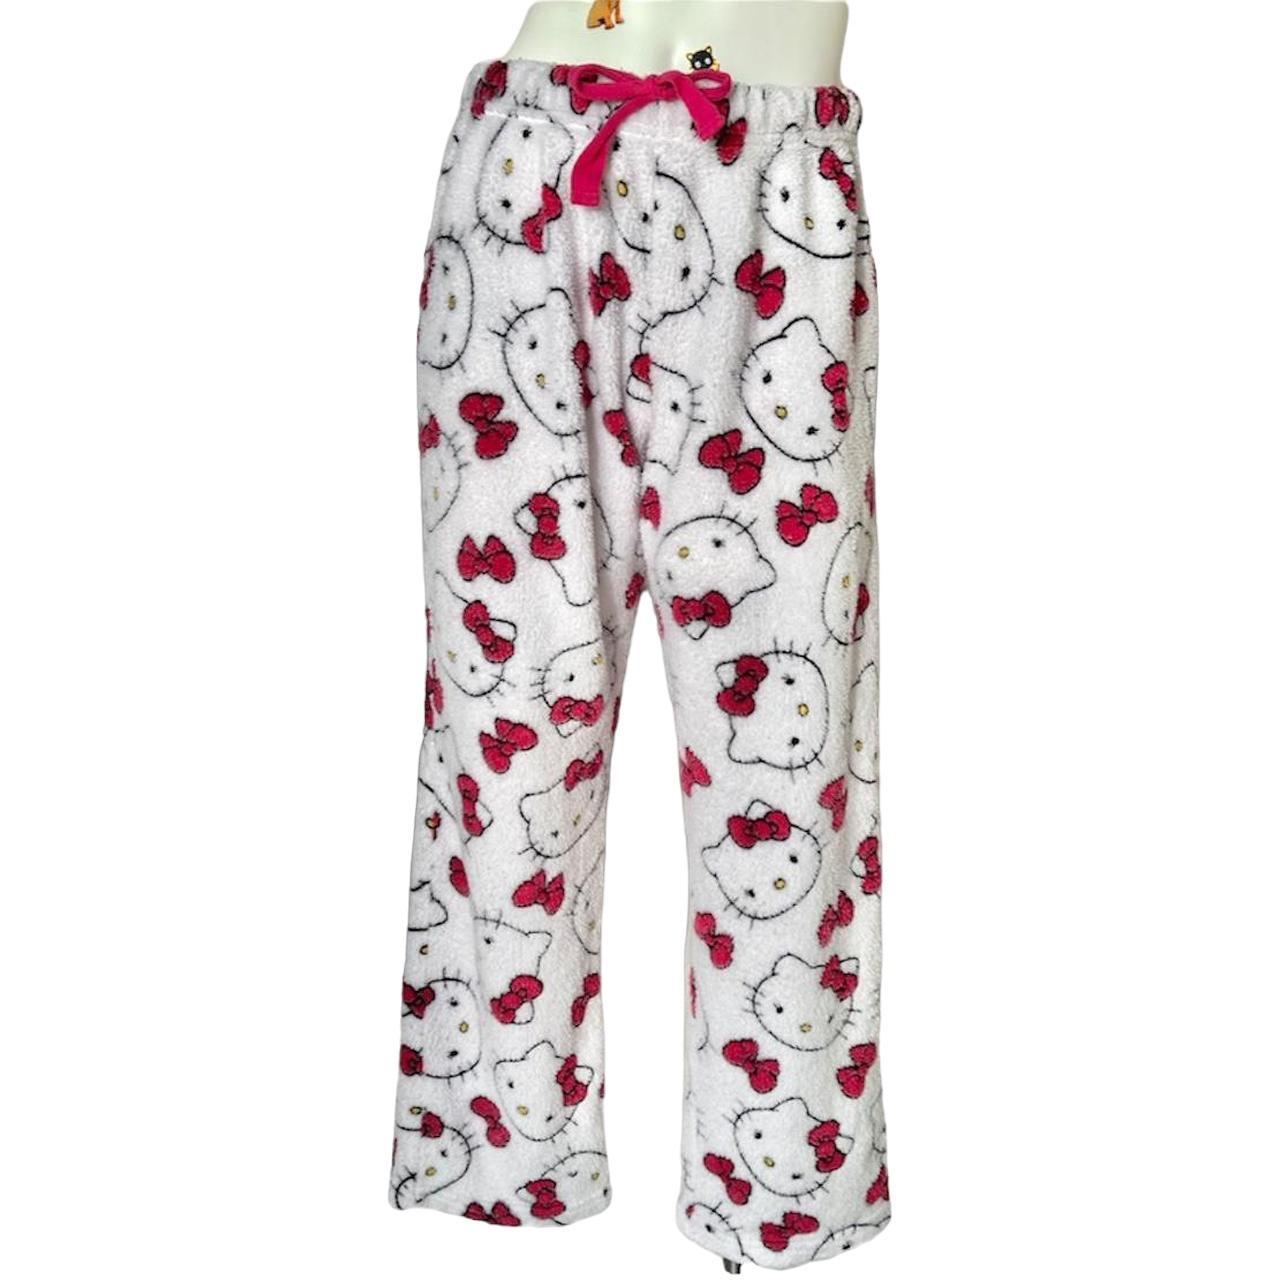 Sanrio Women's Pajamas